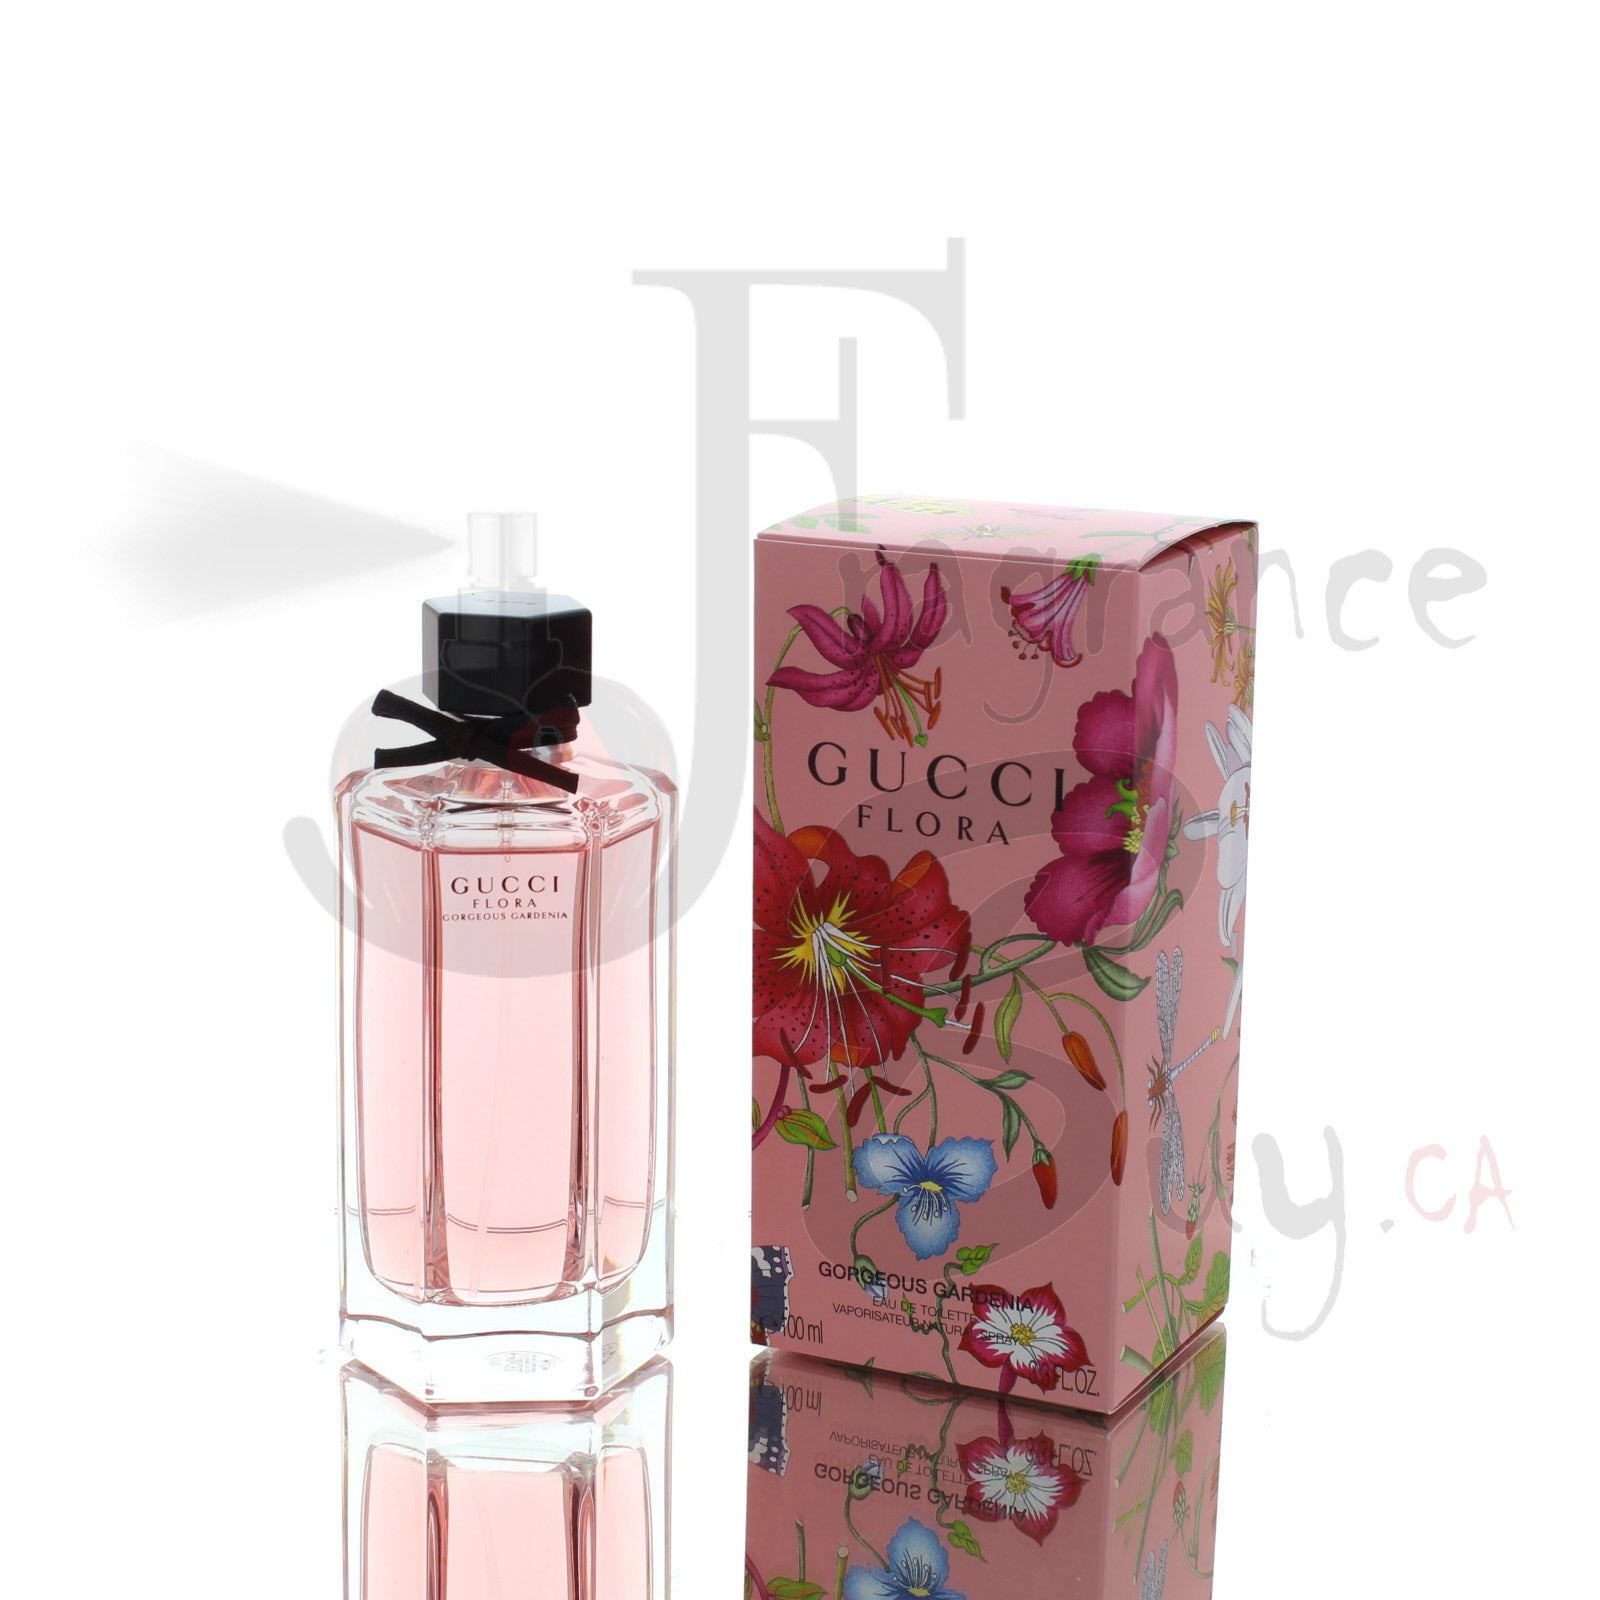 gucci flora gorgeous gardenia perfume